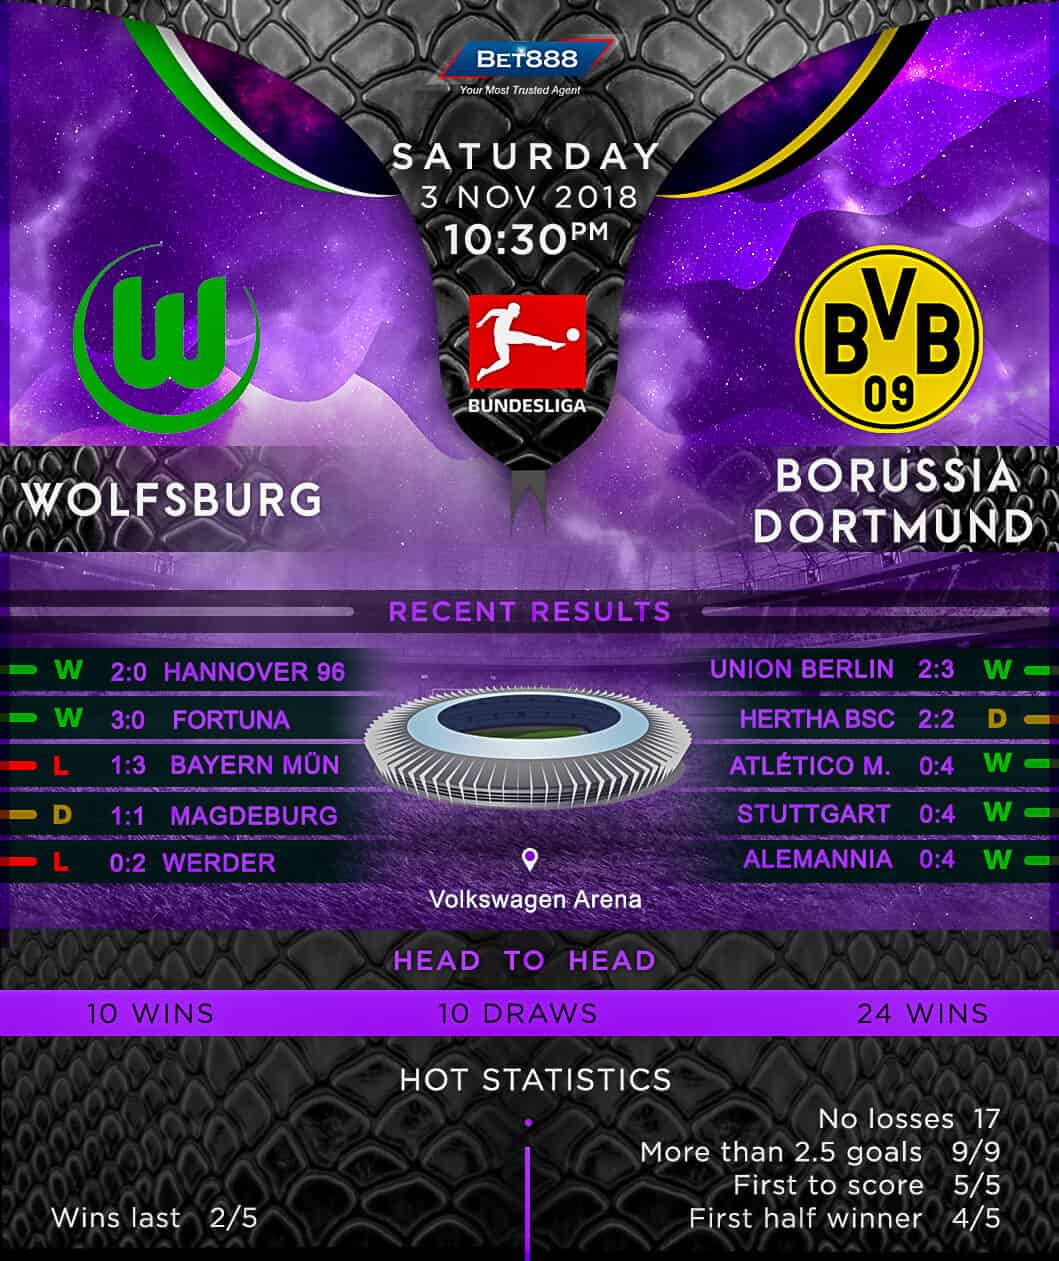 Wolfsburg vs Borussia Dortmund 03/11/18